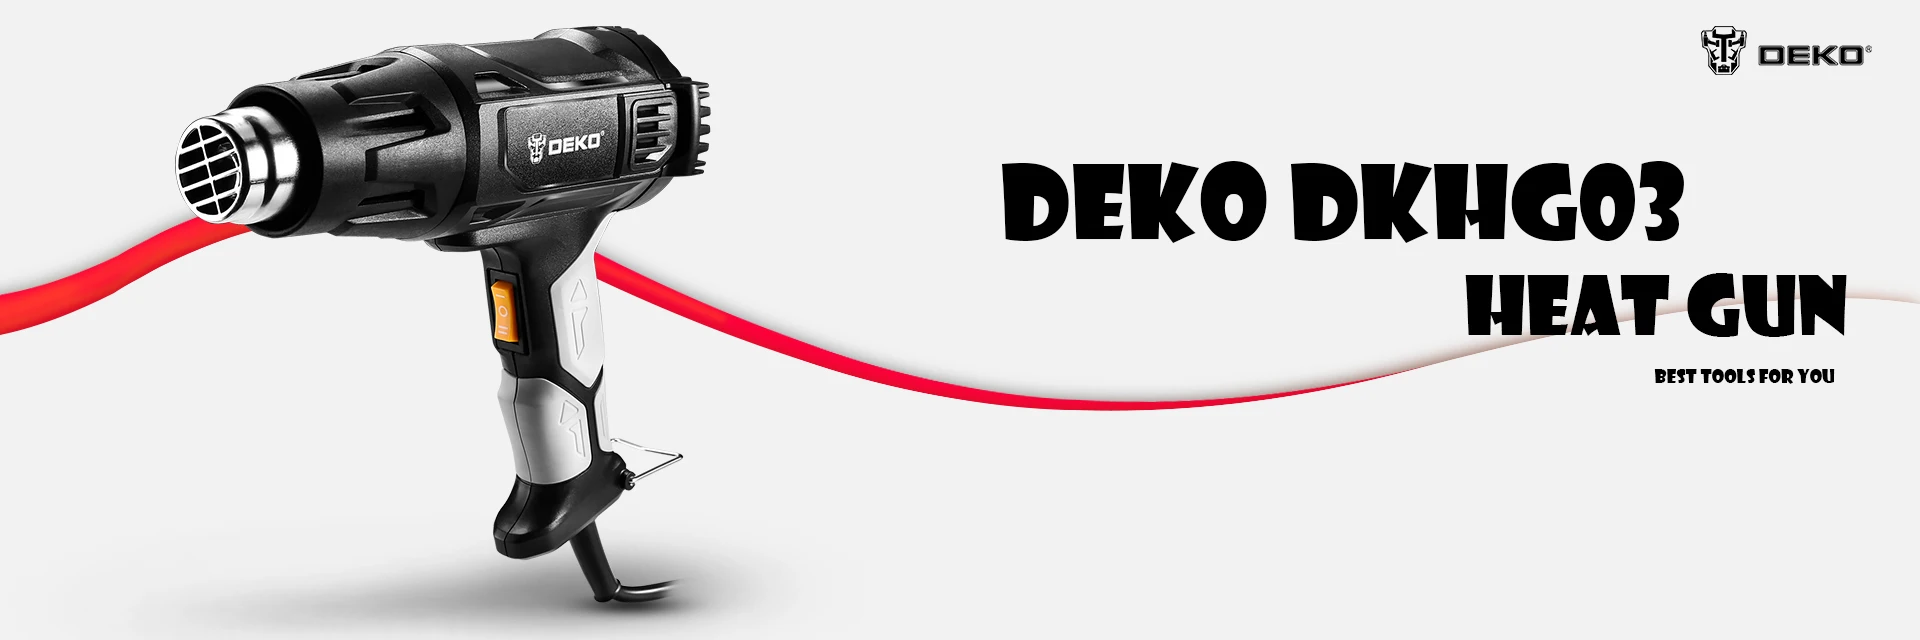 DEKO DKHG02 220 В Тепловая пушка с 3 регулируемой температурой 2000 Вт усовершенствованная электрическая тепловая пушка с четырьмя насадками для электроинструмента